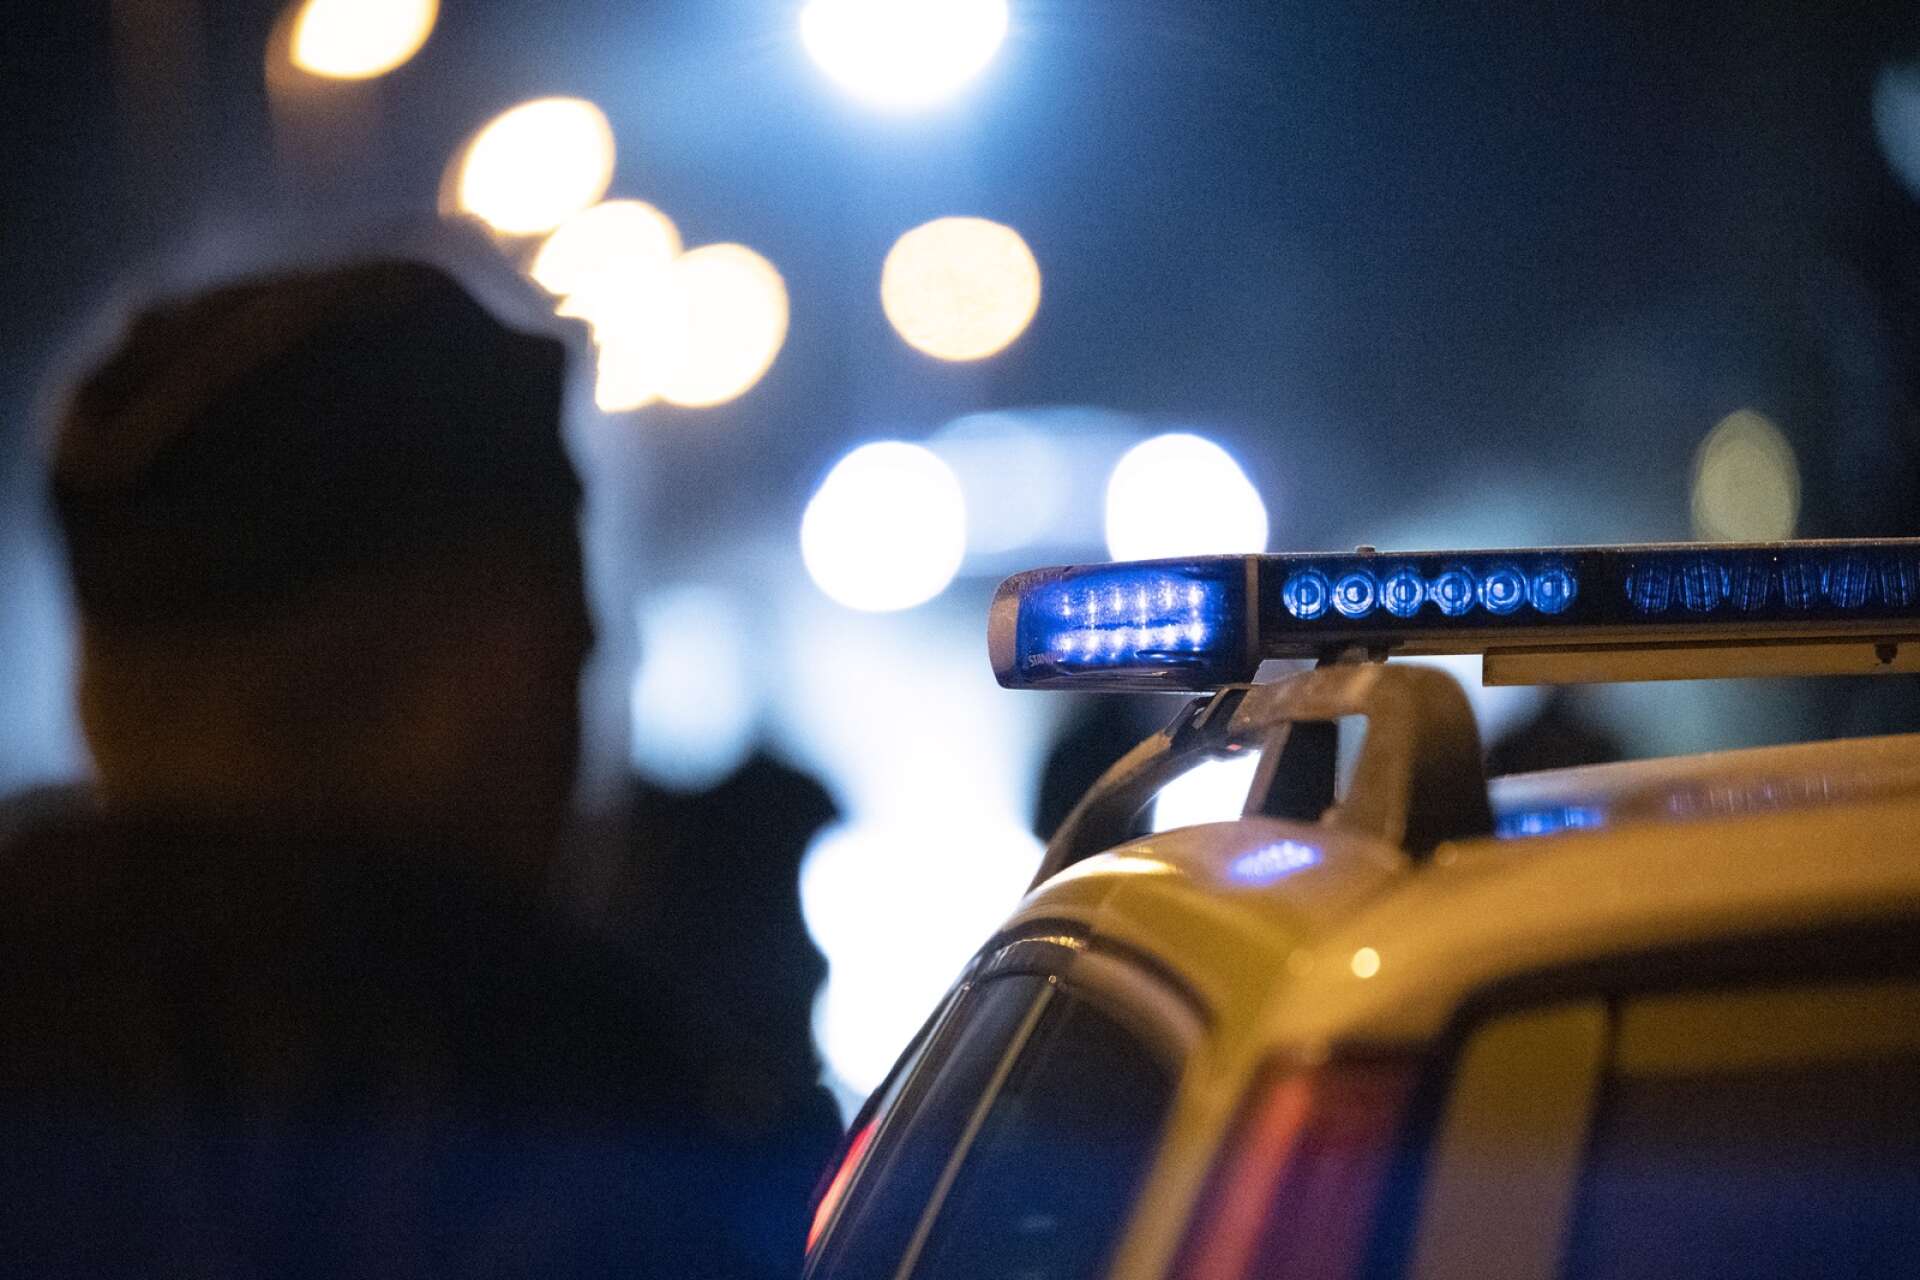 En man i Mellerud fick under onsdagen följa med polisen för provtagning. 